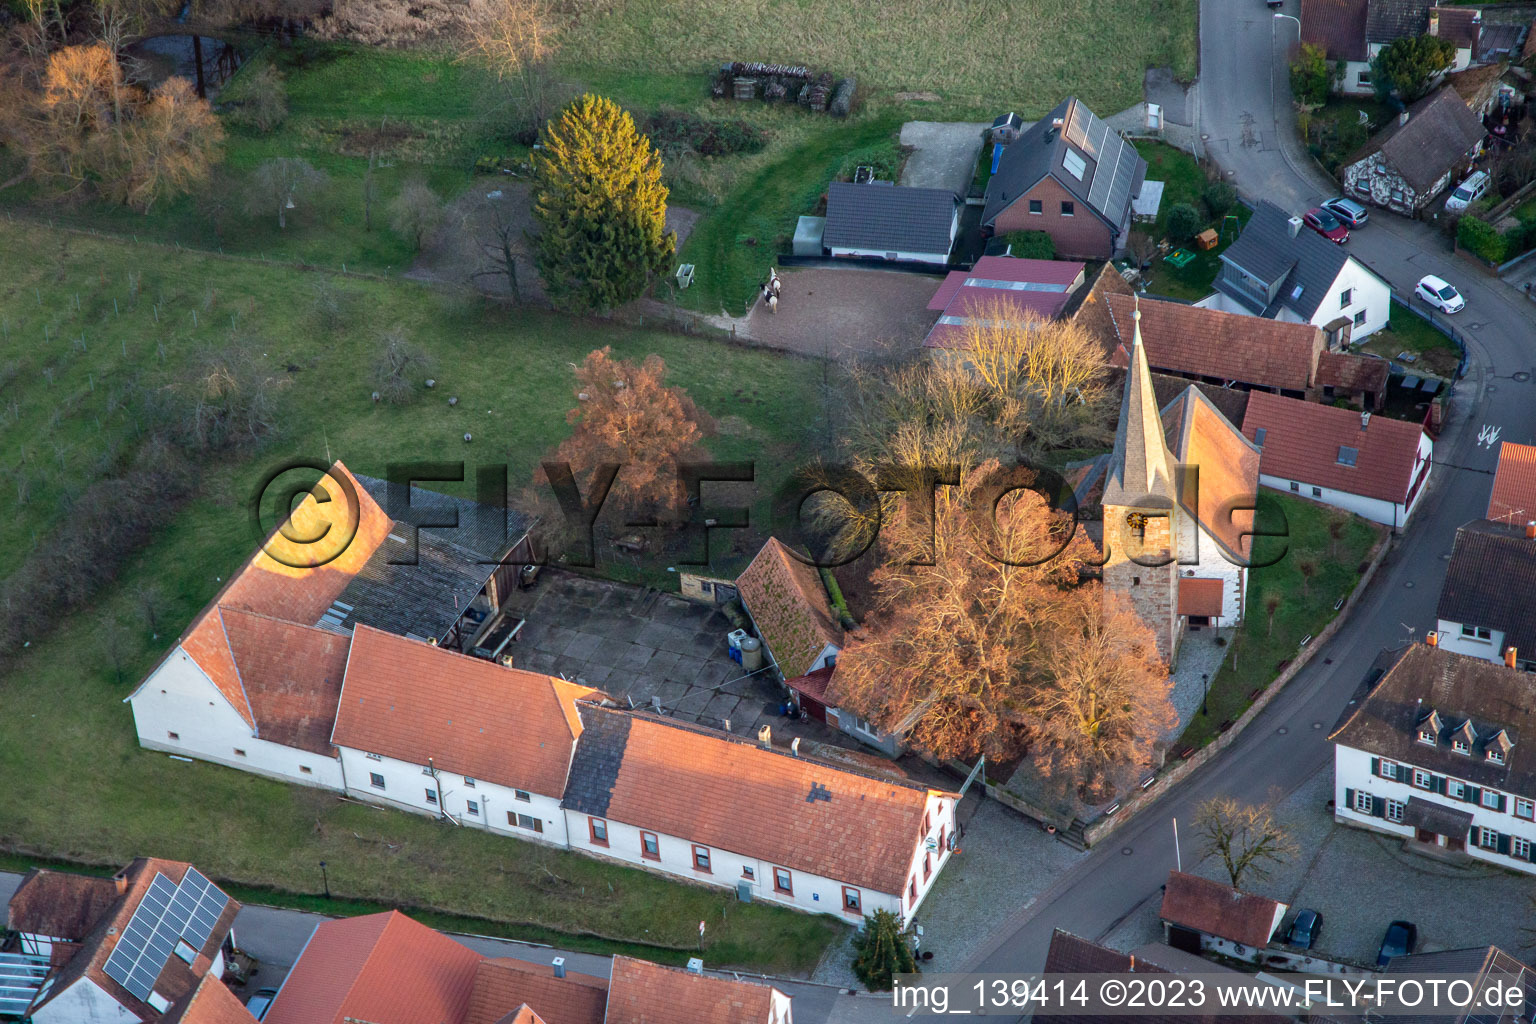 Aerial view of Protestant church in the district Klingen in Heuchelheim-Klingen in the state Rhineland-Palatinate, Germany